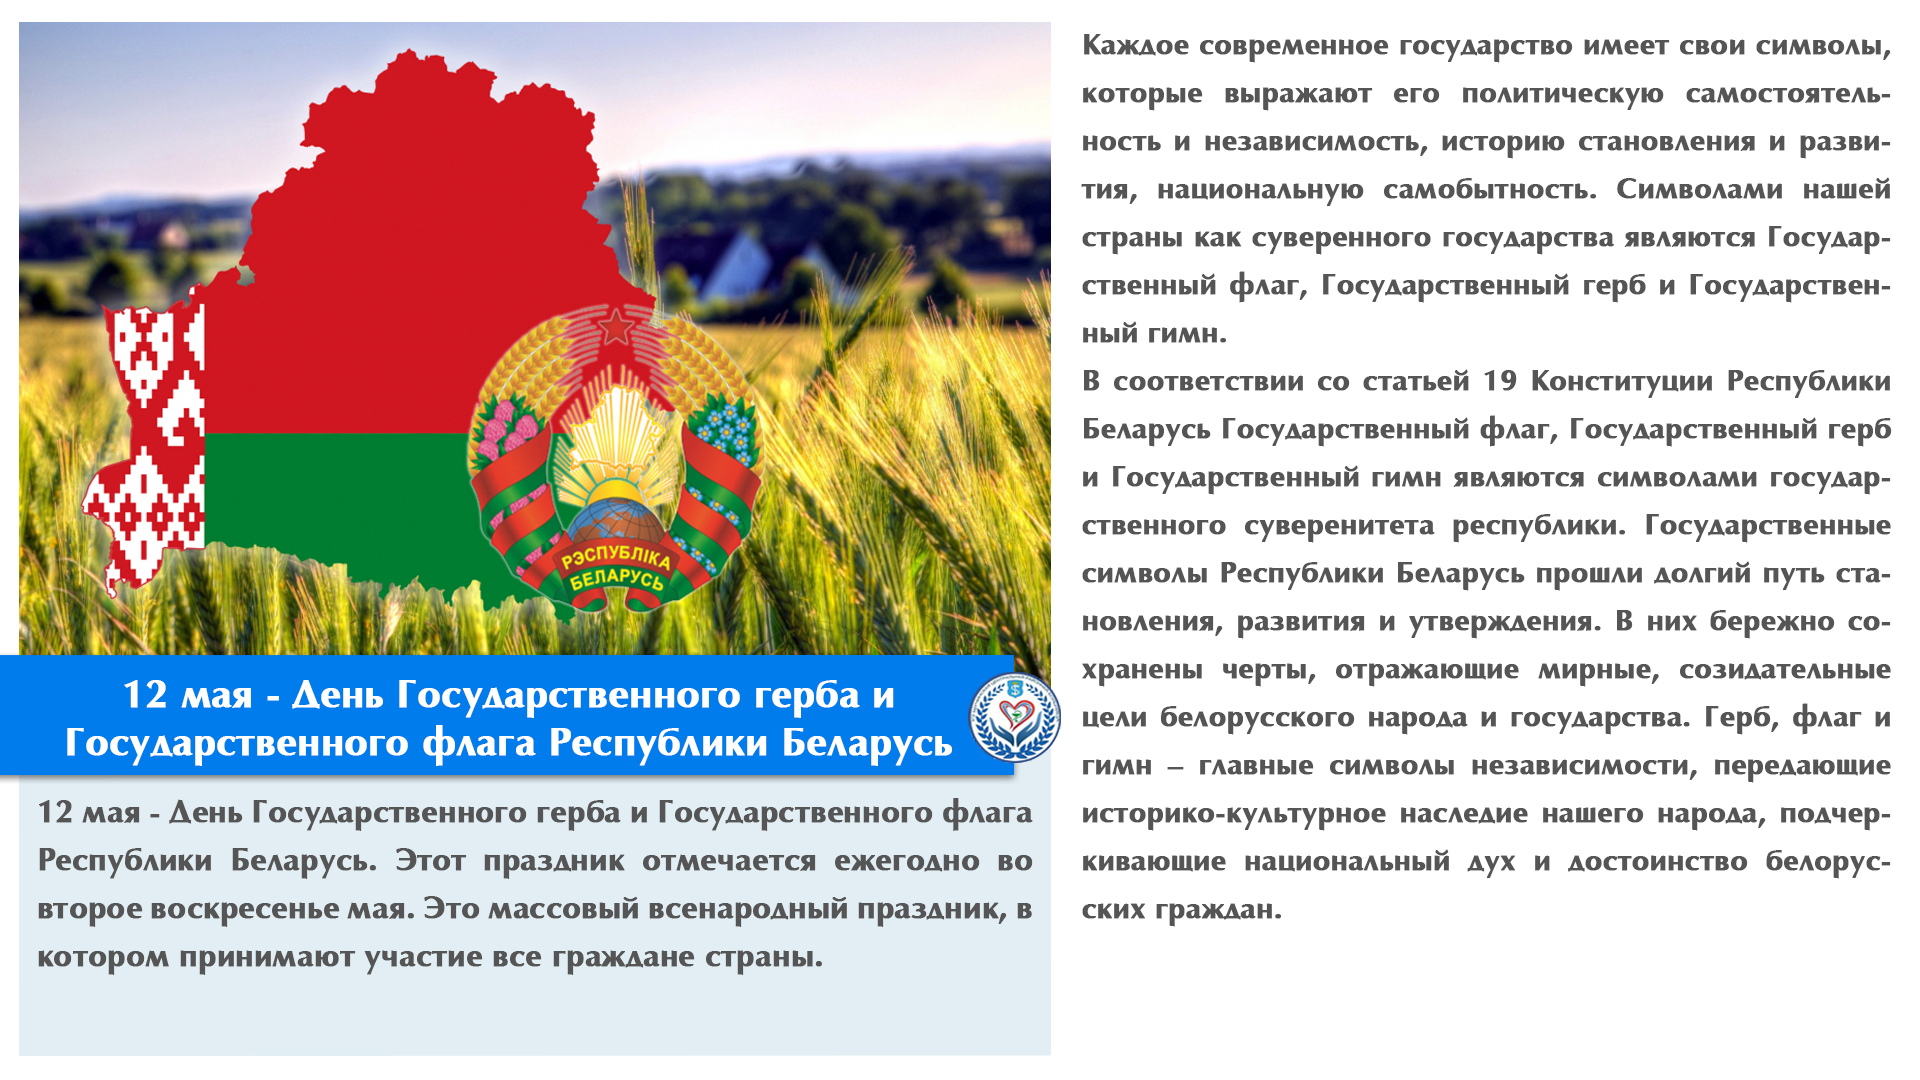 12 мая - День Государственного герба и Государственного флага Республики Беларусь